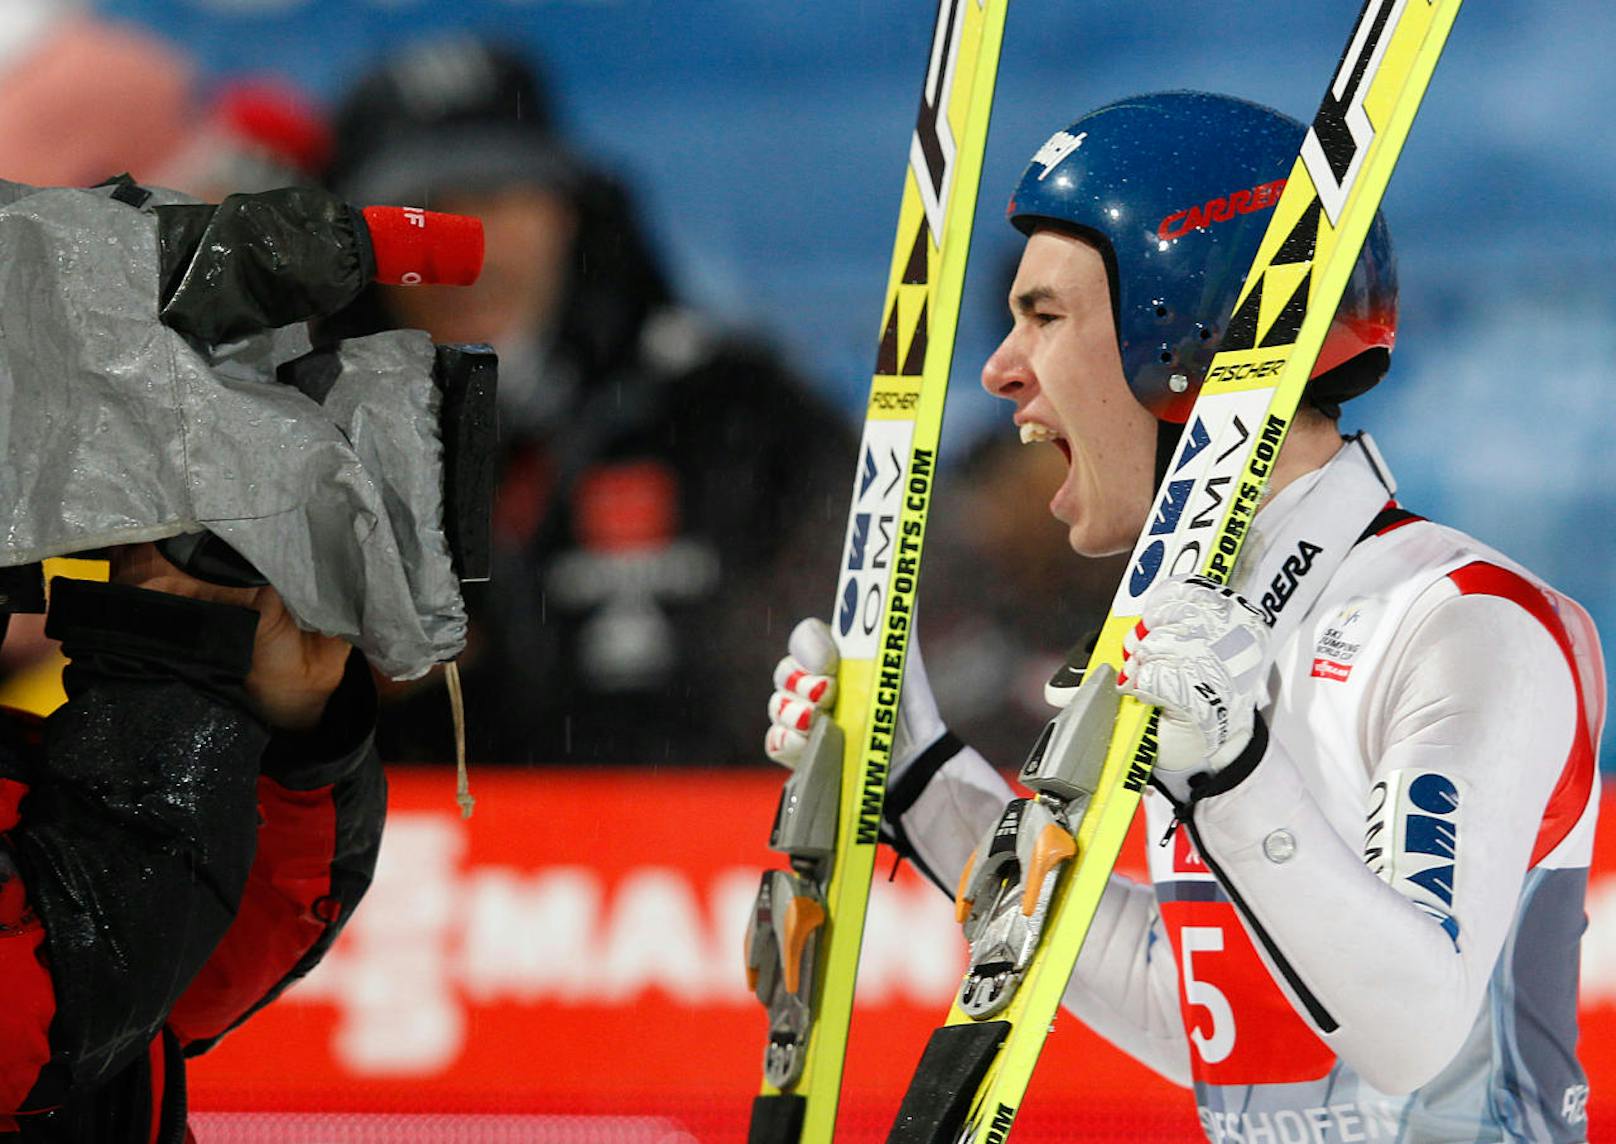 Am 6. Jänner 2013 jubelte Kraft über seinen ersten Podestplatz - bei seinem dritten Einsatz im Weltcup! Mit dem dritten Platz in Bischofshofen schloss sich Kraft dem elitären Kreis der weltbesten Skispringer an.